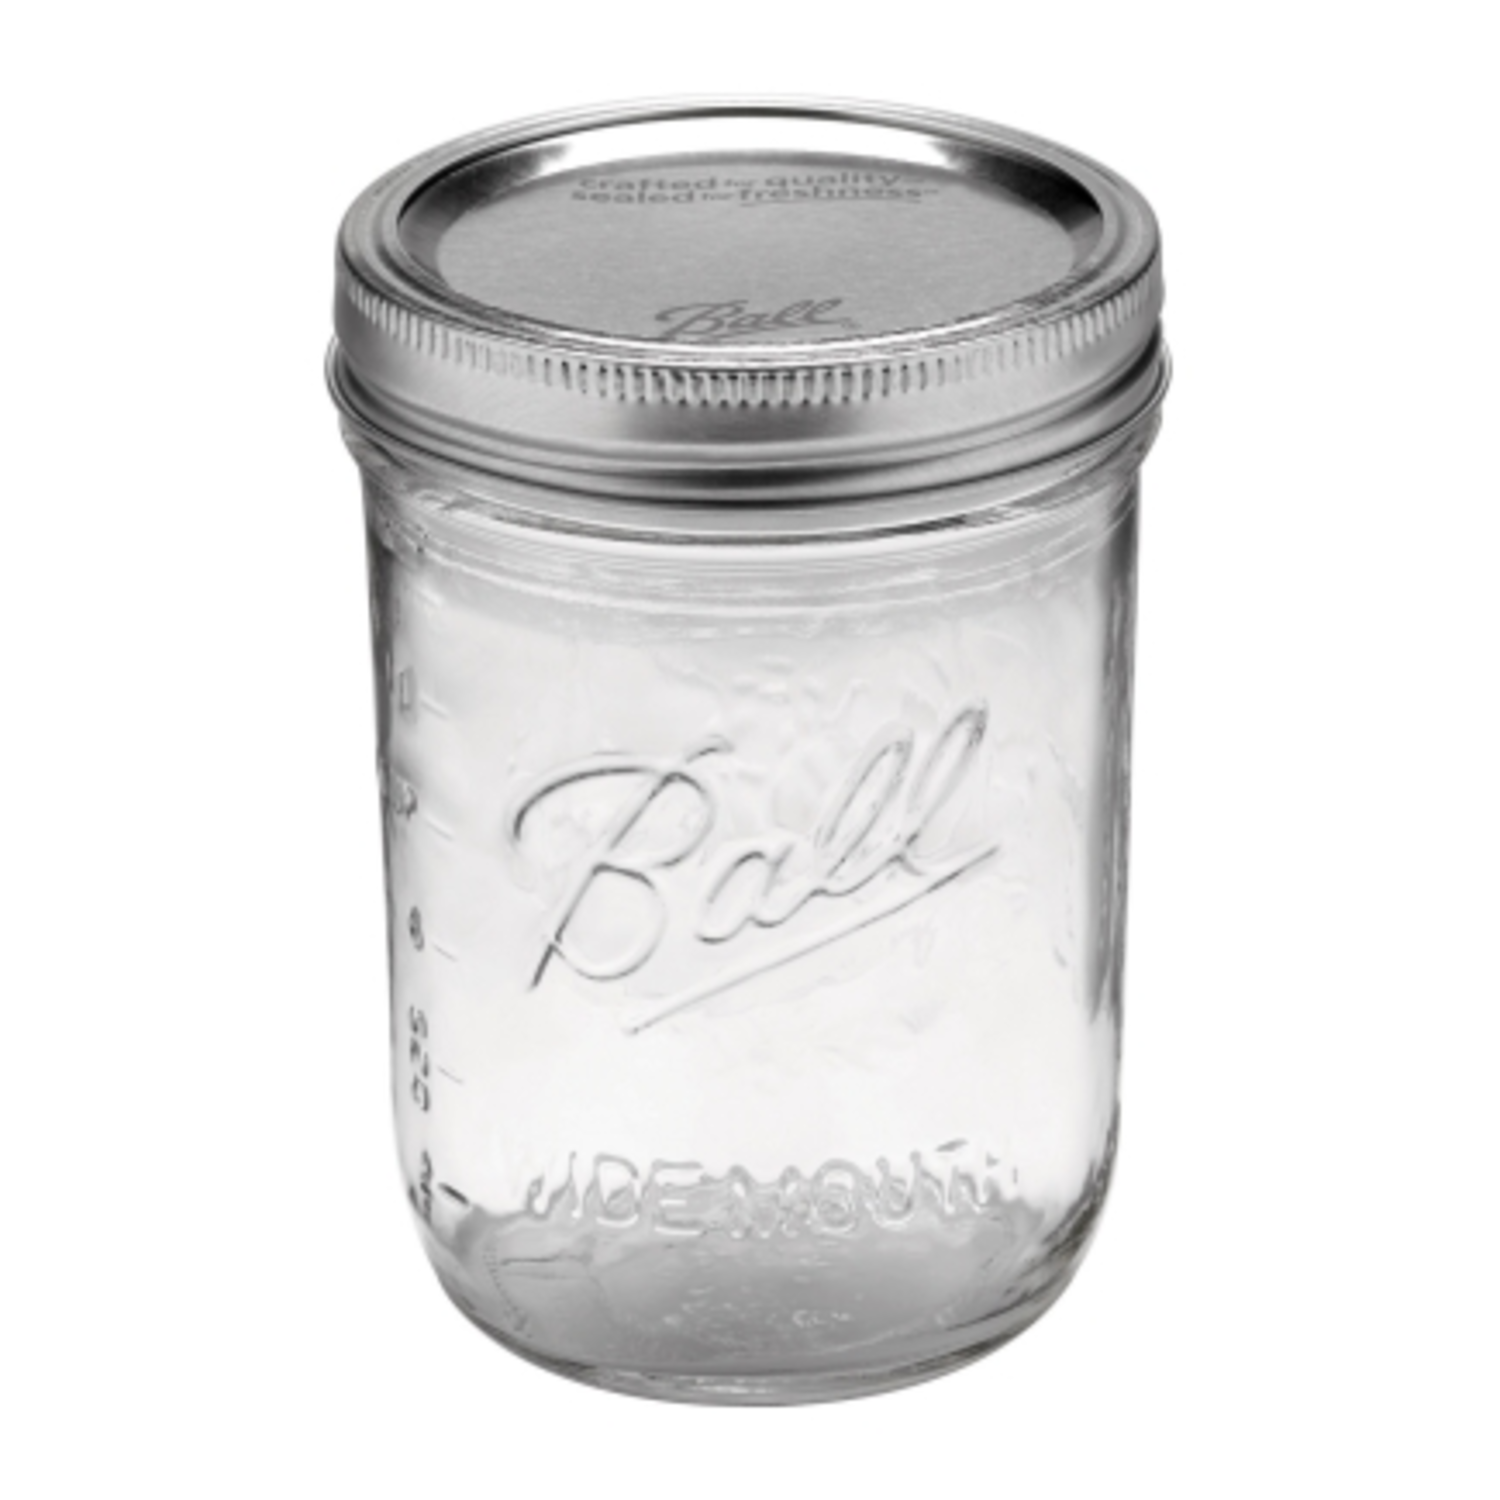 https://cdn.shoplightspeed.com/shops/633447/files/18298444/1500x4000x3/ball-16-oz-wide-mouth-canning-jar.jpg